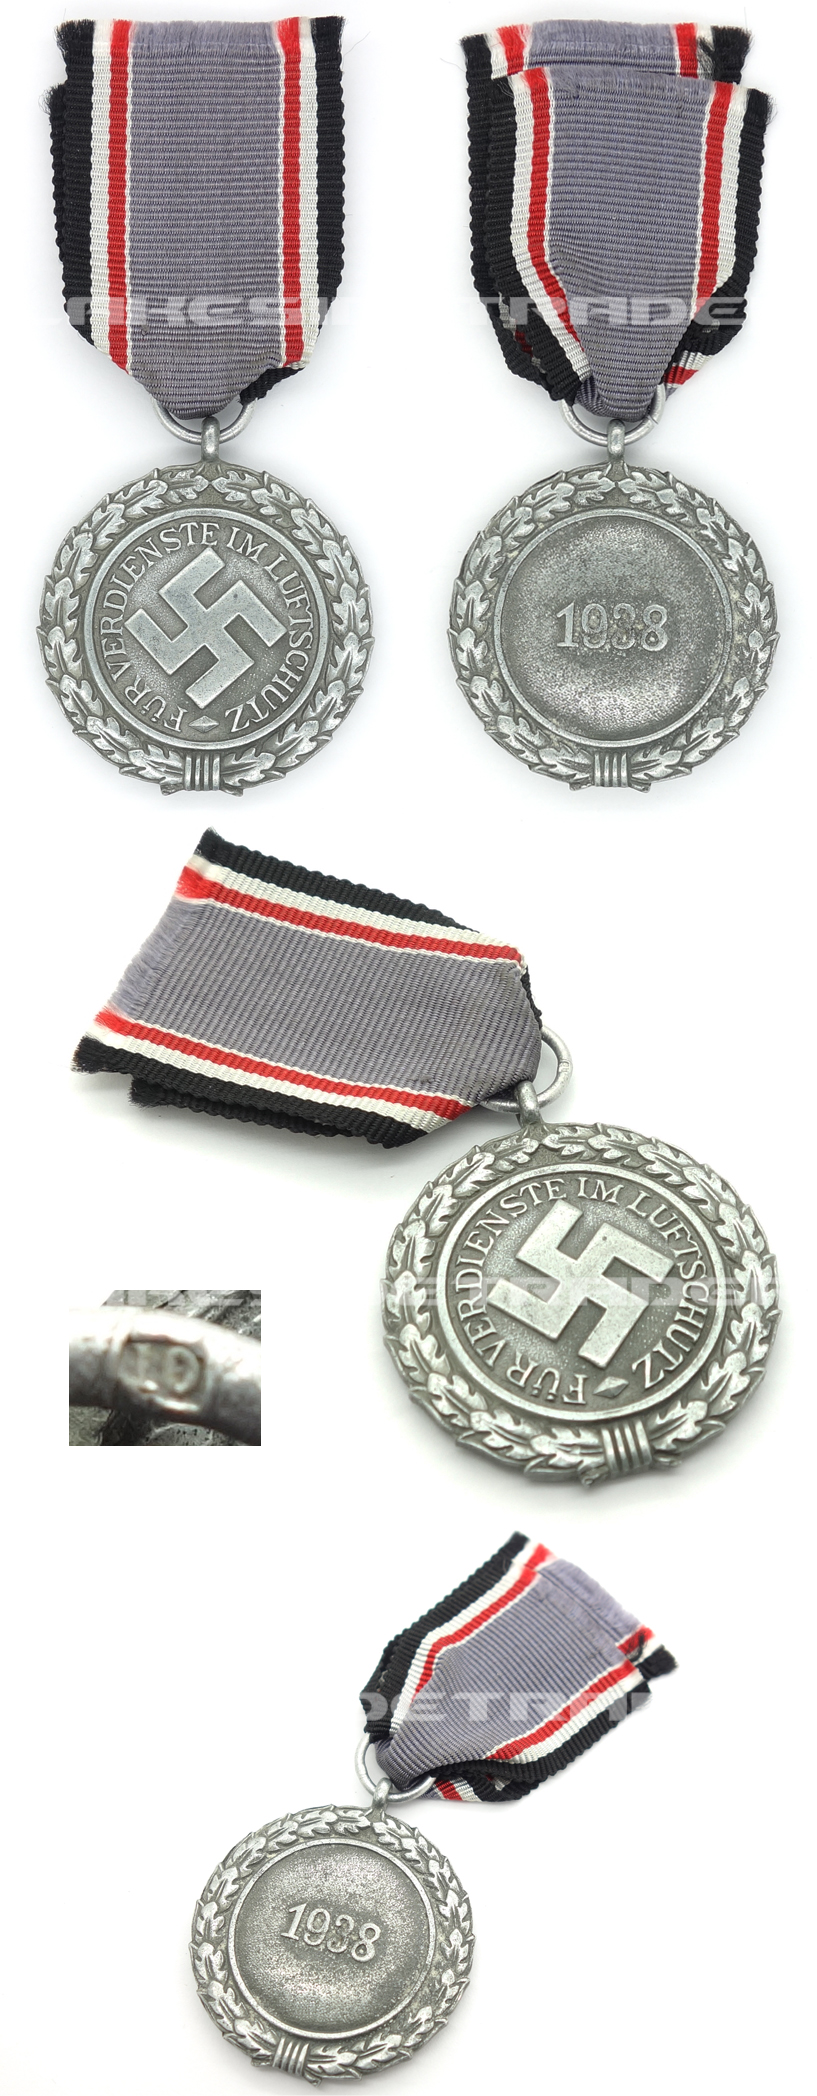 2nd Class Luftschutz Medal by 10